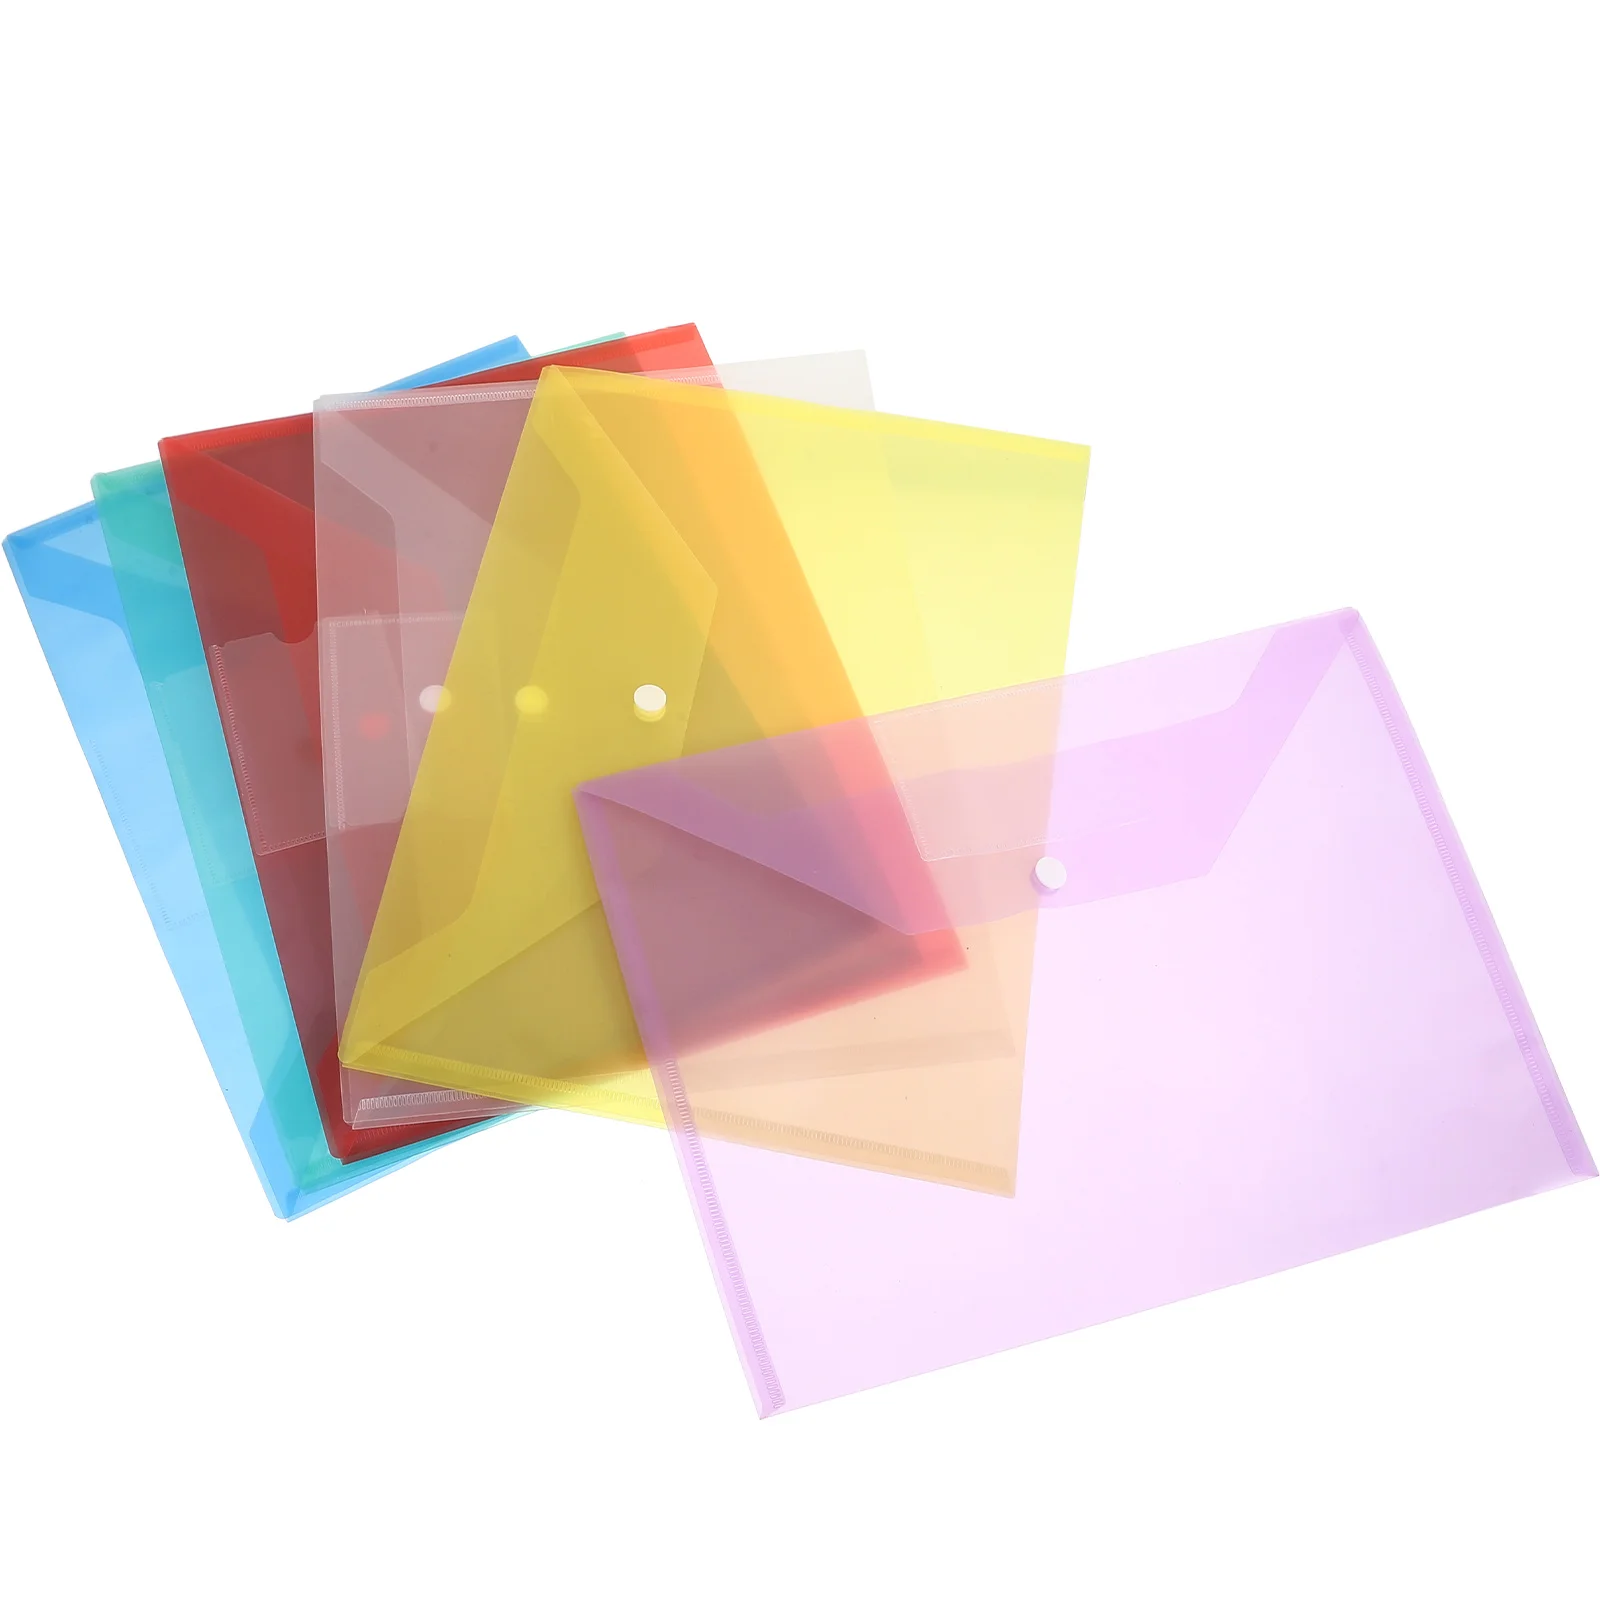 

6 Pcs Plastic Envelope Folder Transparent Document Organizer Office File Folders Documents Envelopes Snap Button PP Student